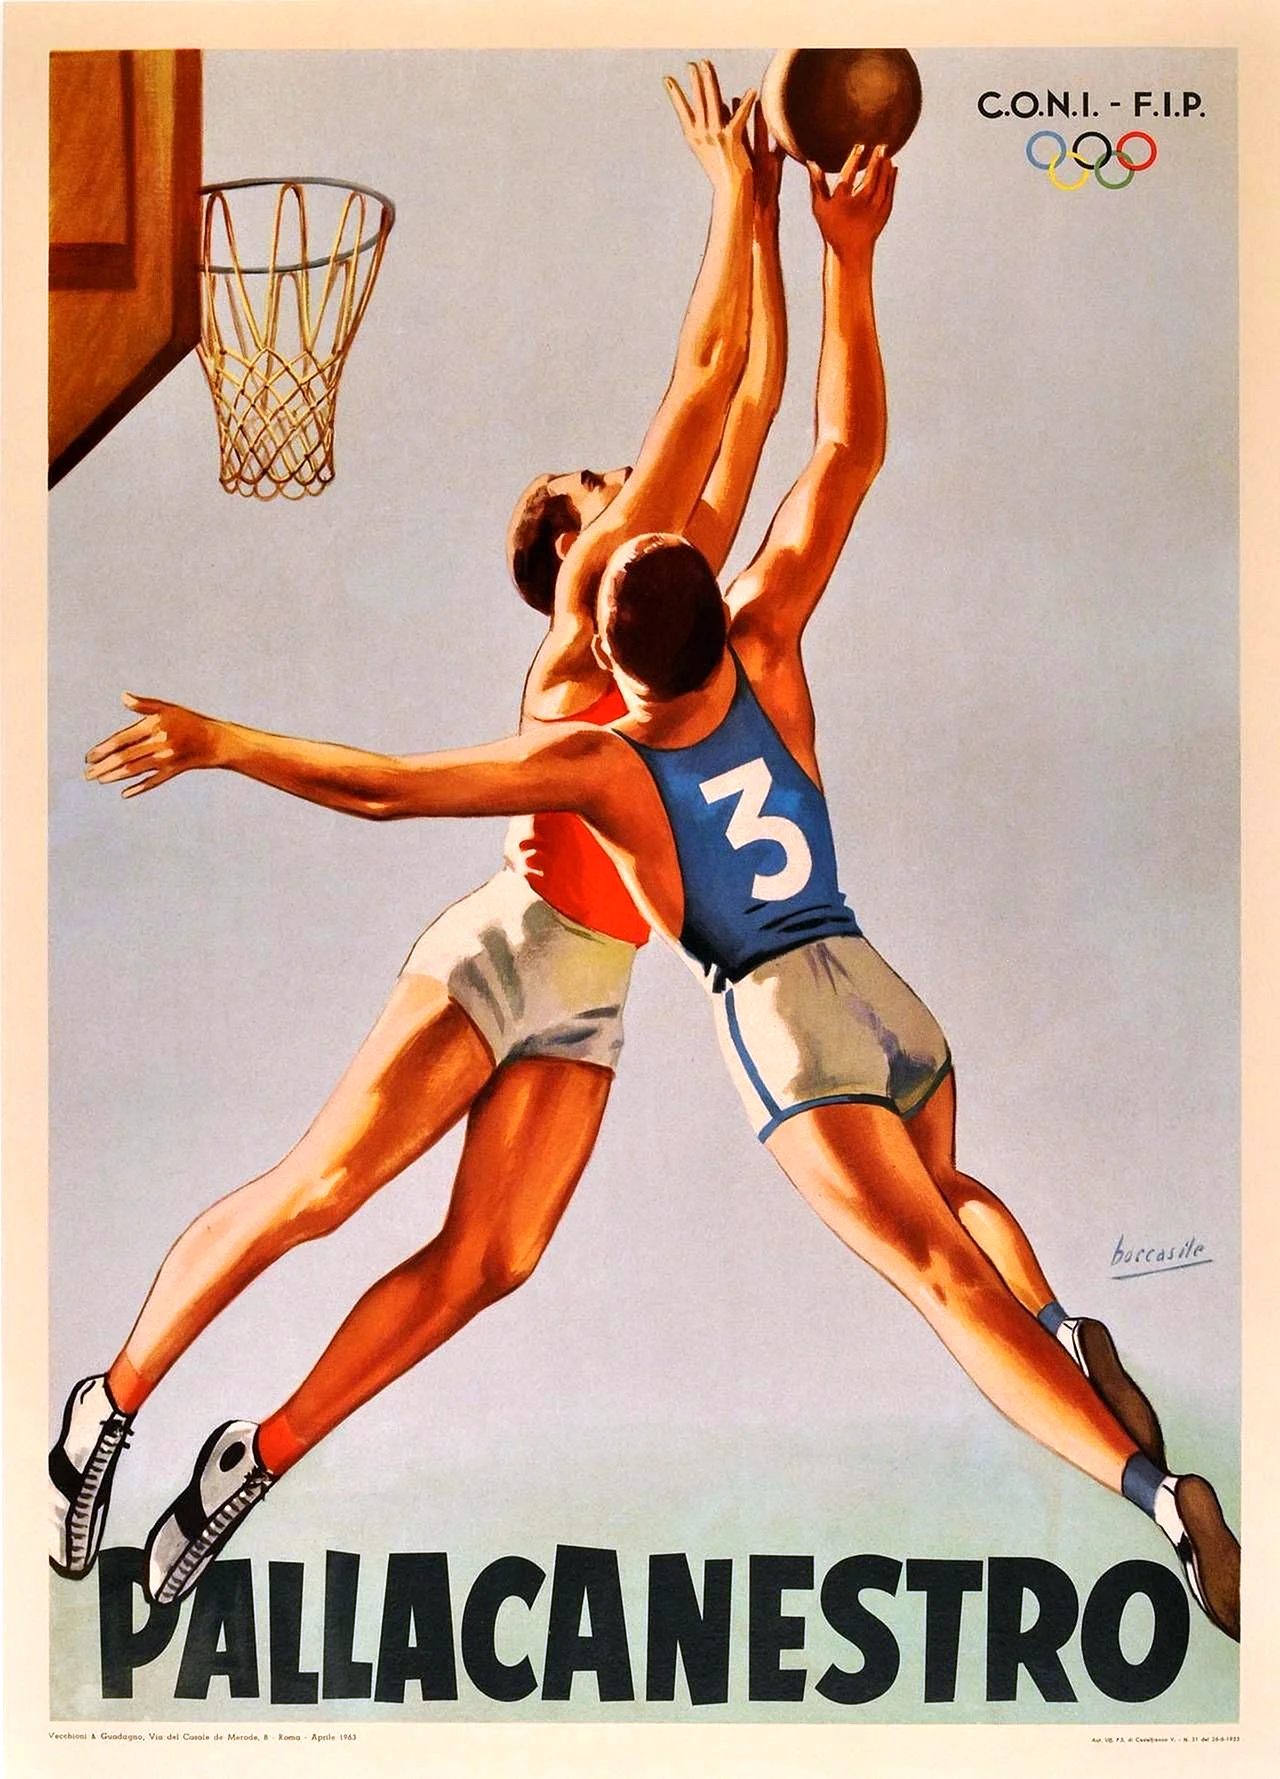 Спортивные плакаты